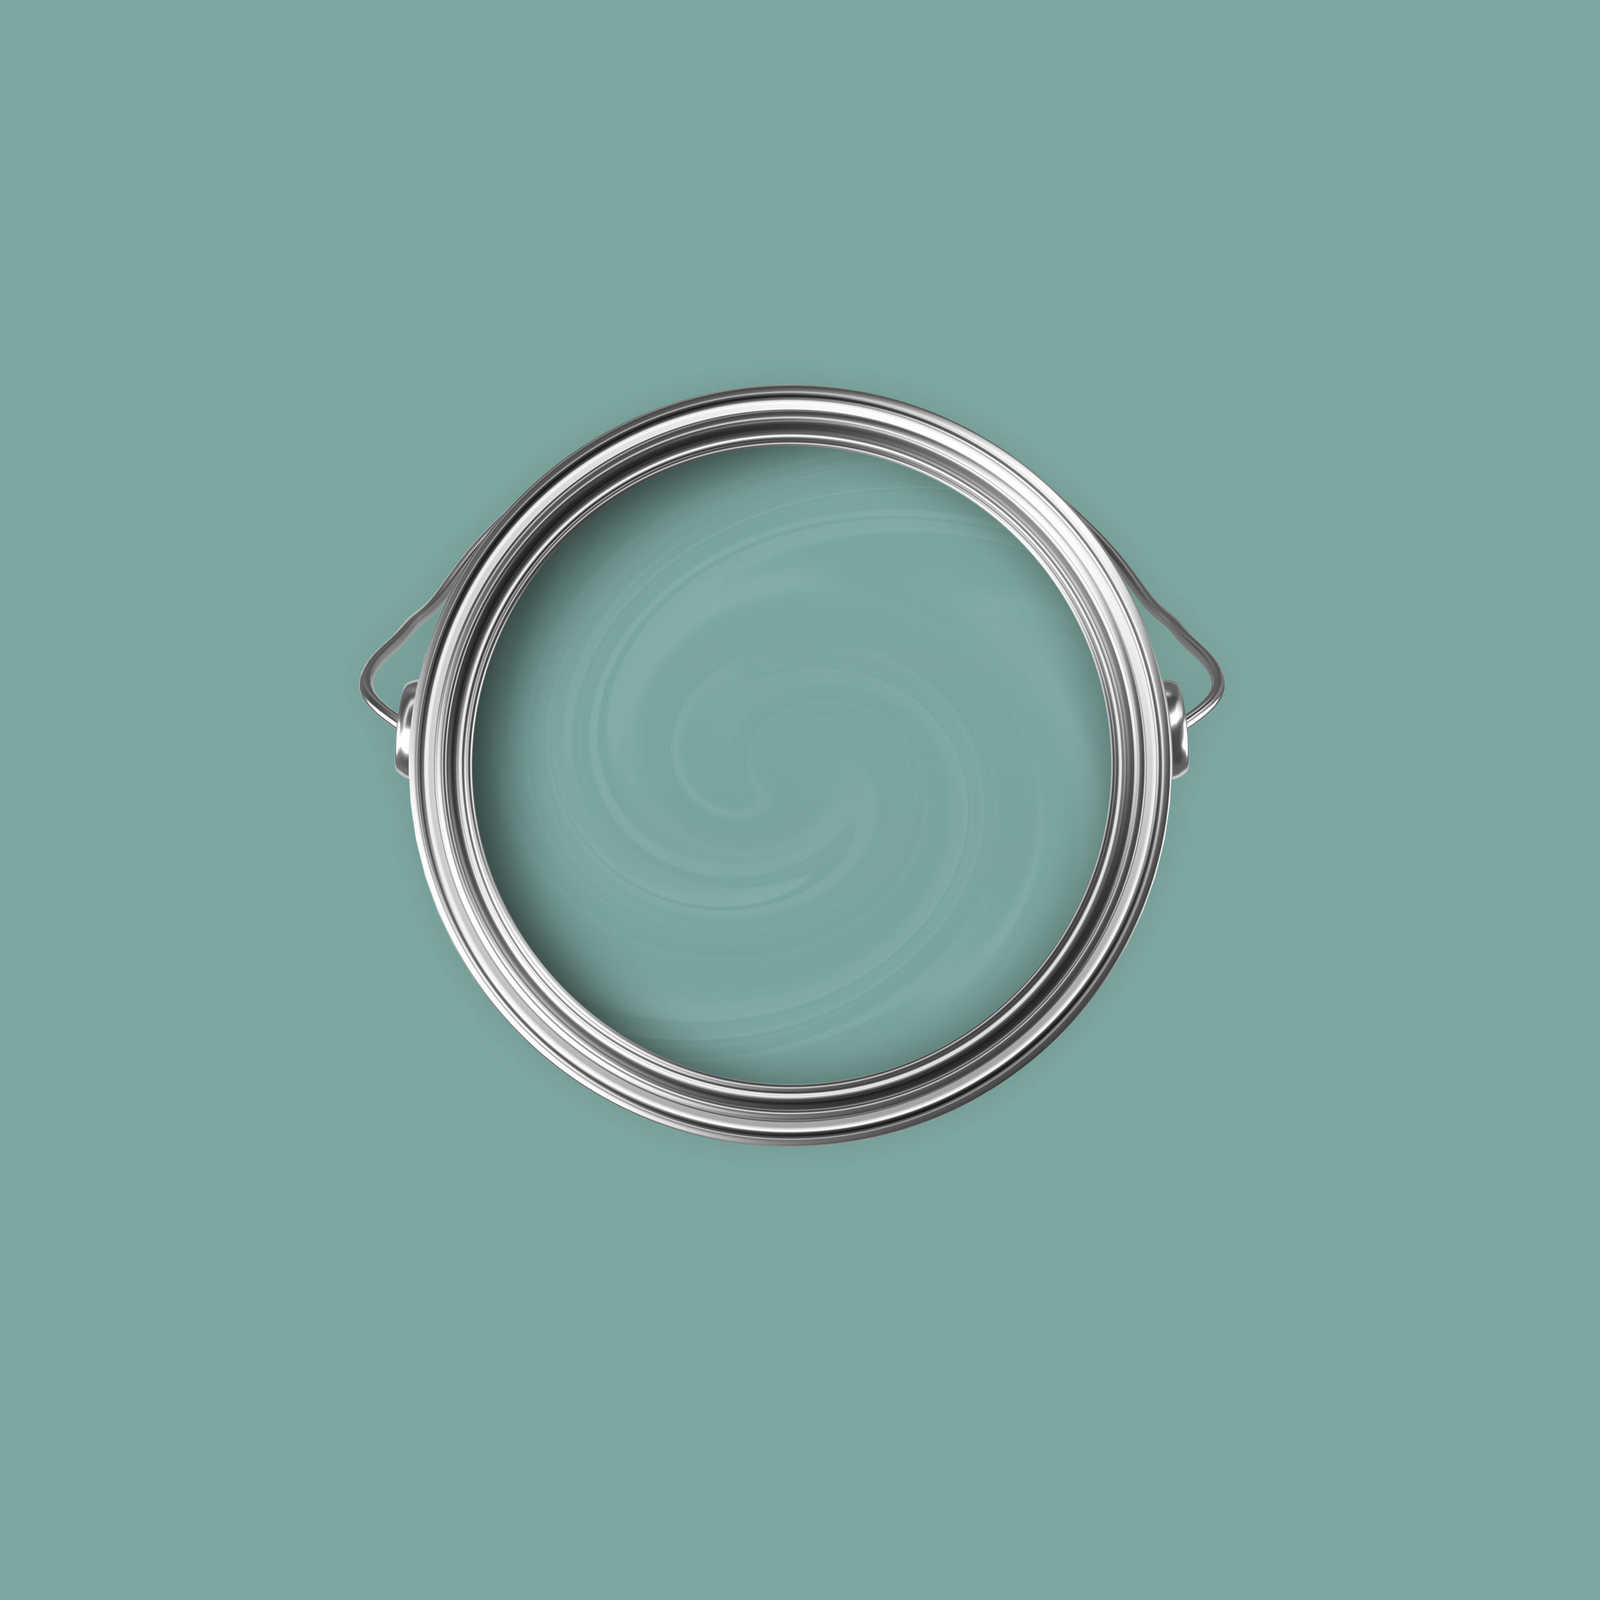             Premium Muurverf Fresh Sage »Expressive Emerald« NW409 – 2,5 Liter
        